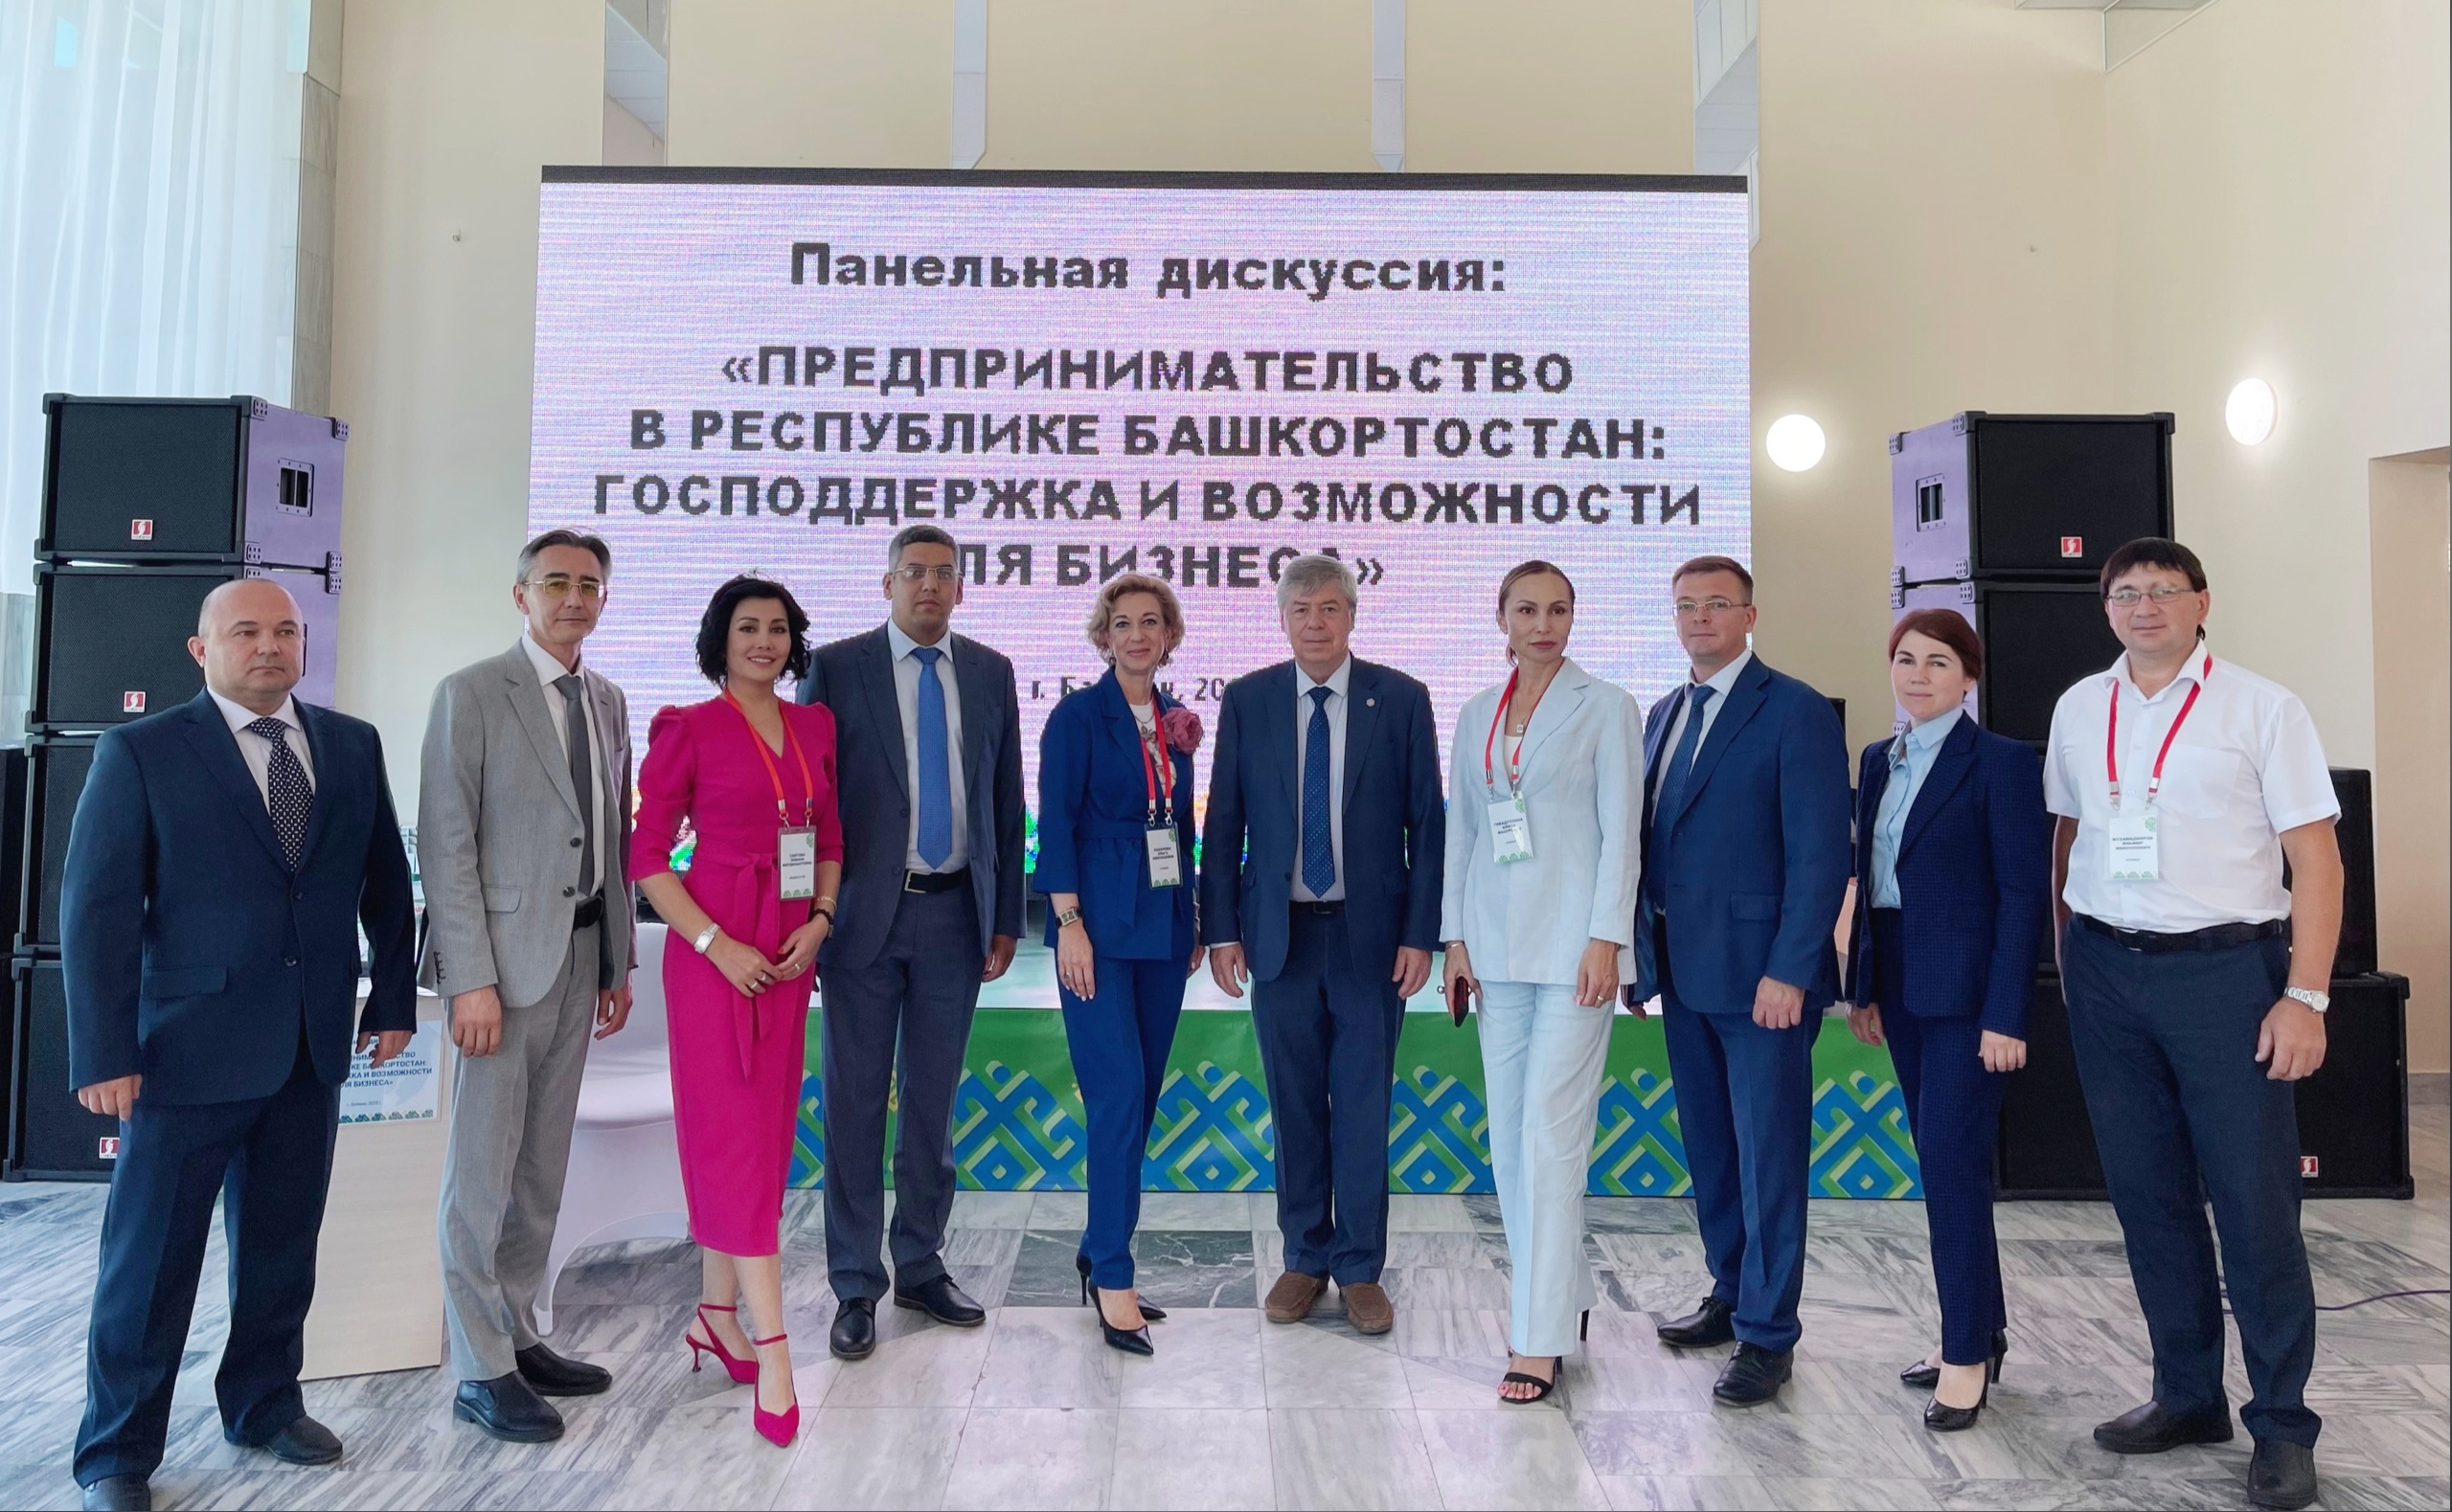 В Баймаке состоялась панельная дискуссия «Предпринимательство в Республике Башкортостан: господдержка и возможности для бизнеса»